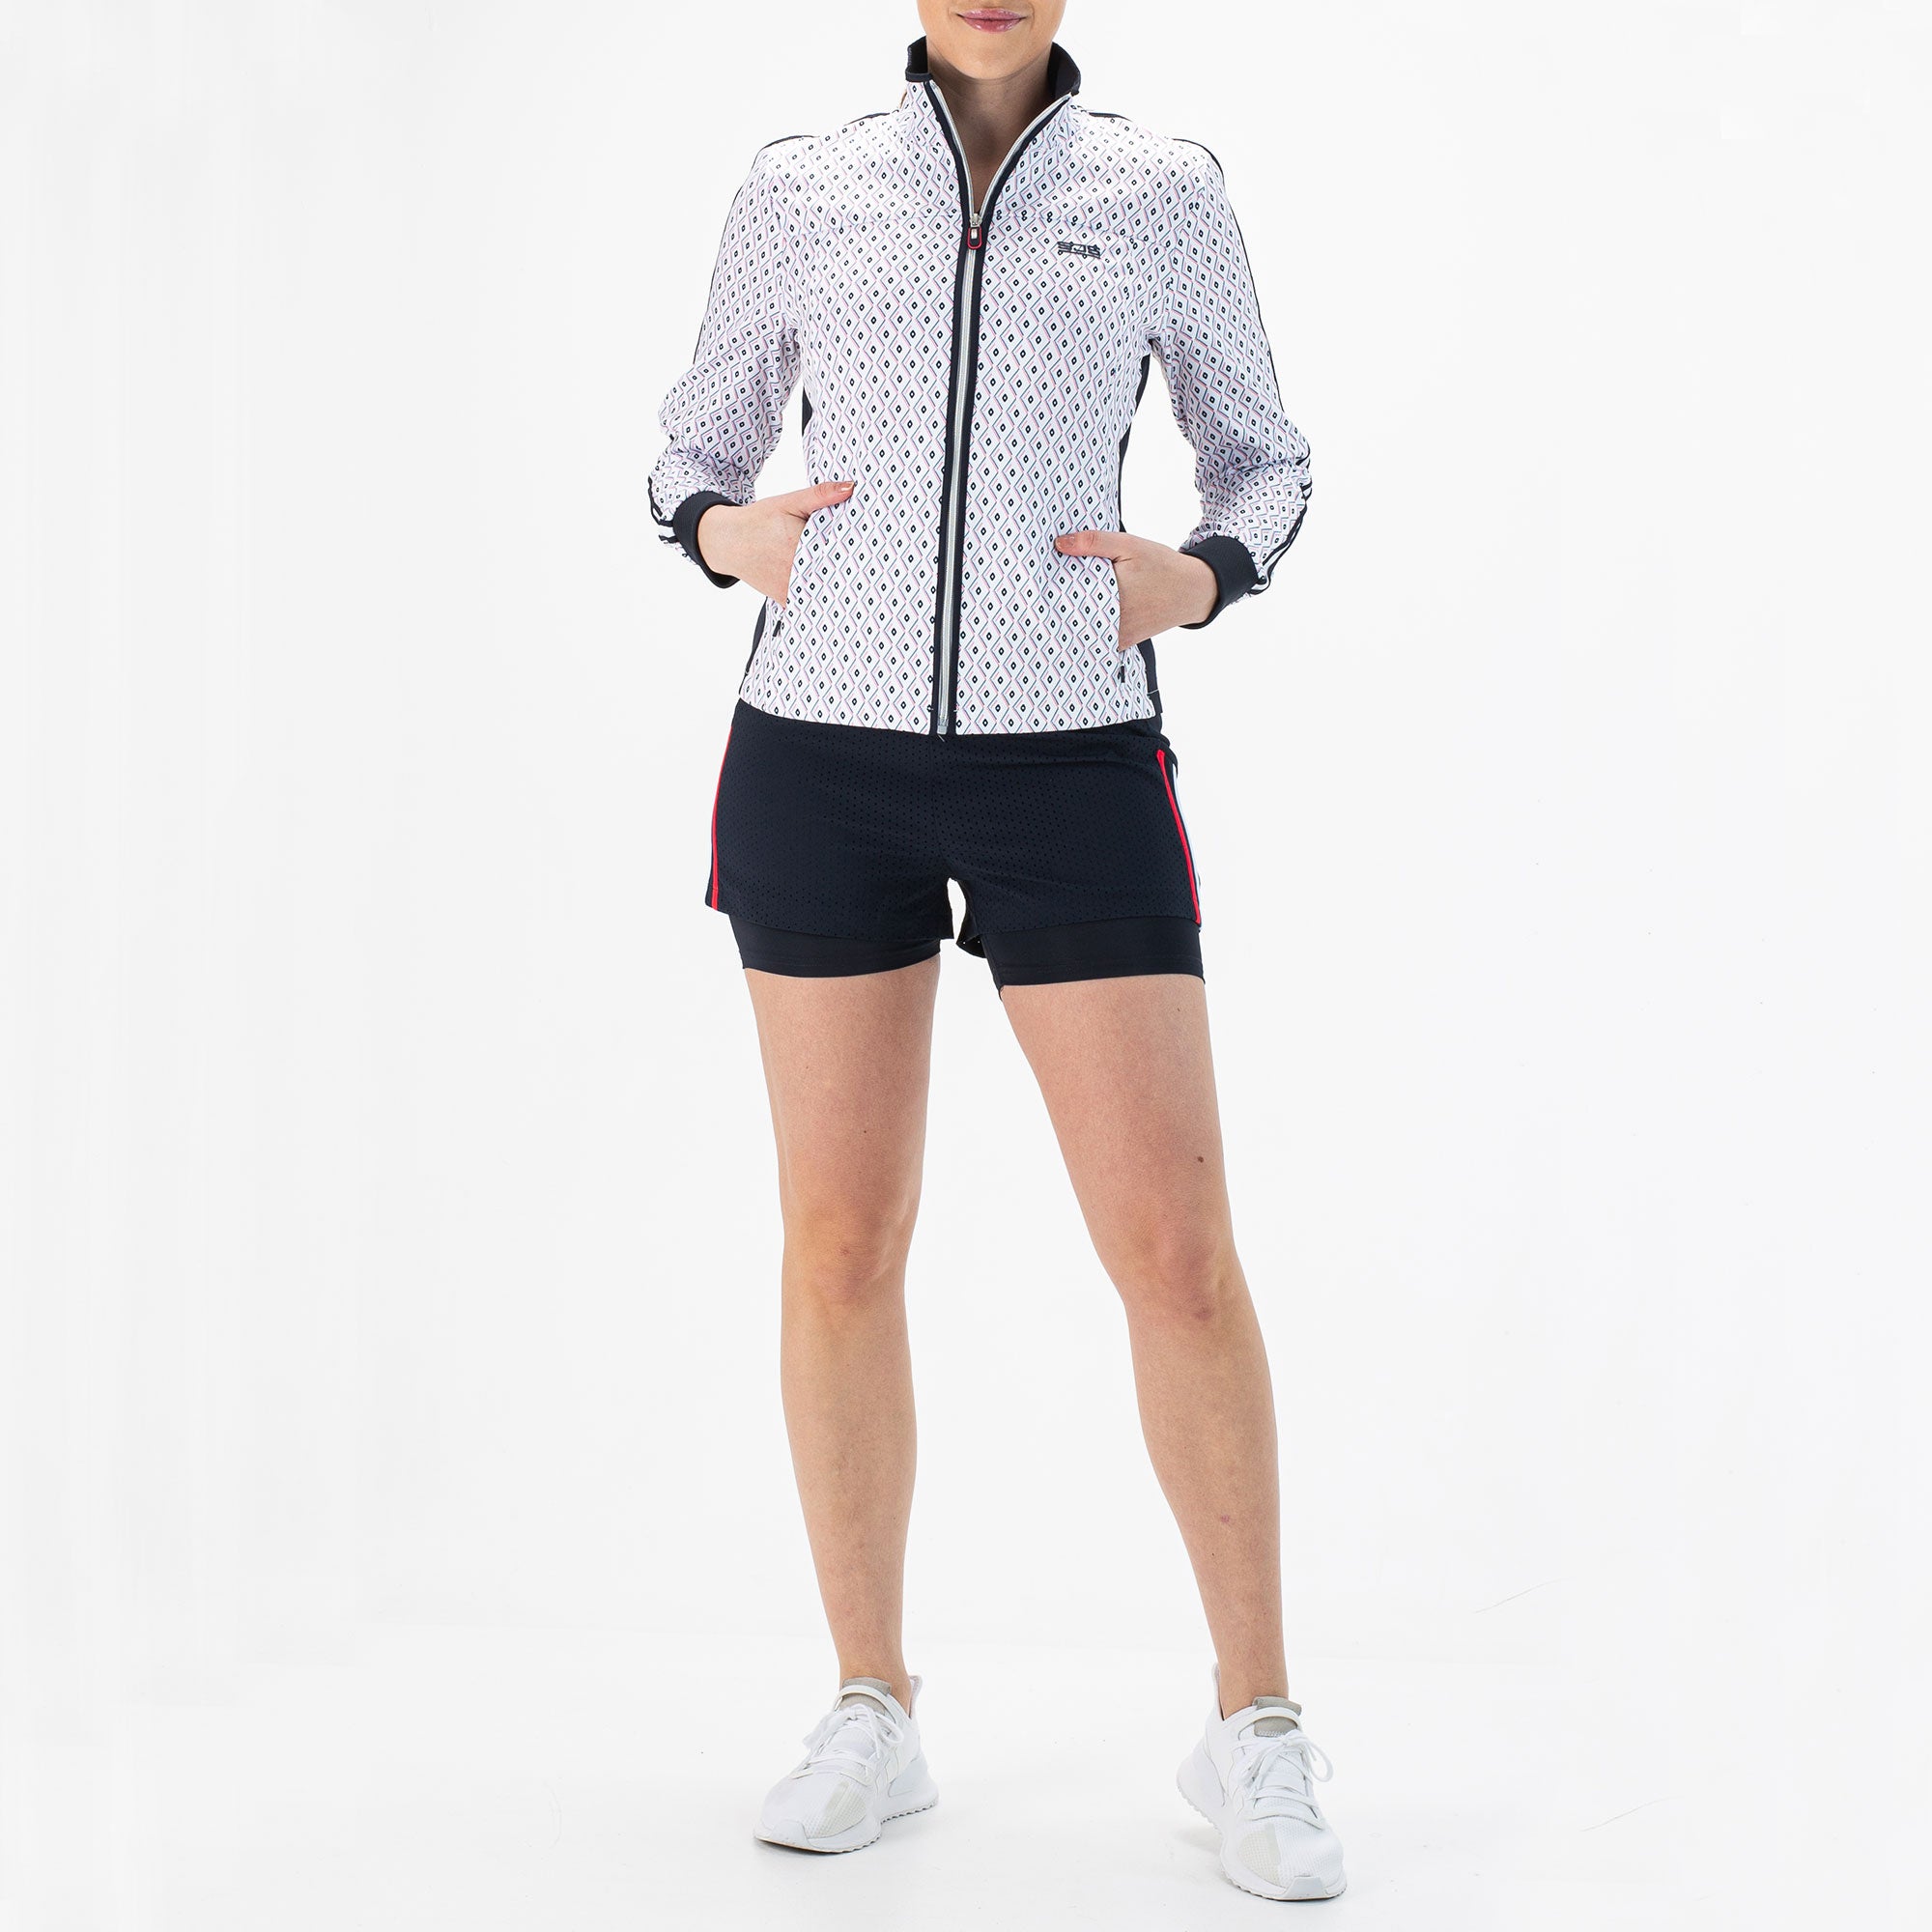 Sjeng Sports Fea Women's Tennis Jacket - White (5)